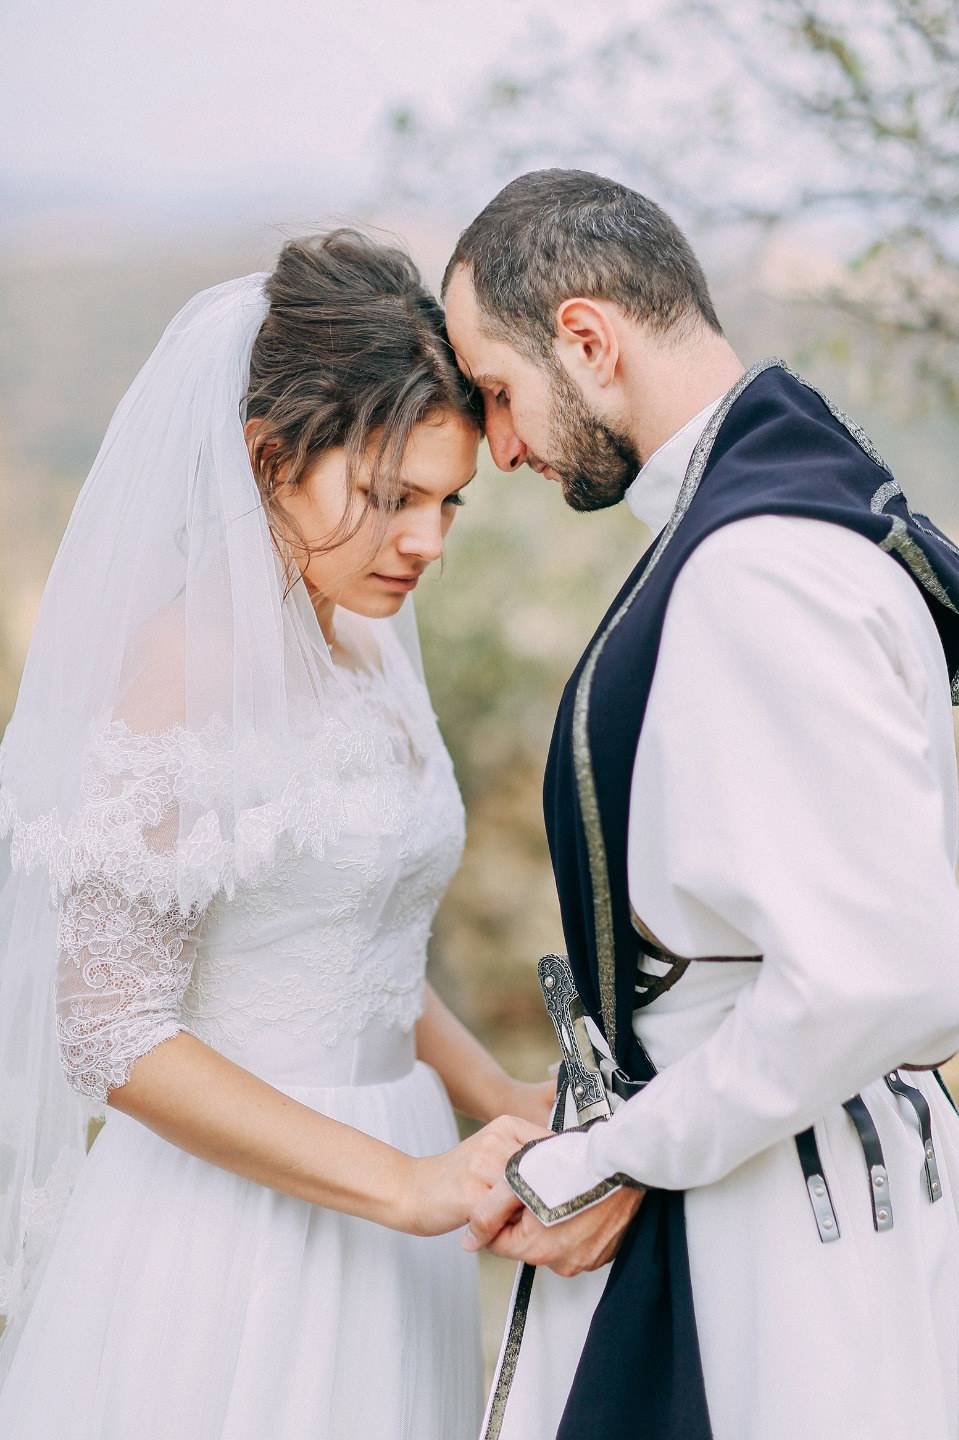 Грузинская свадьба - народные традиции и обычаи